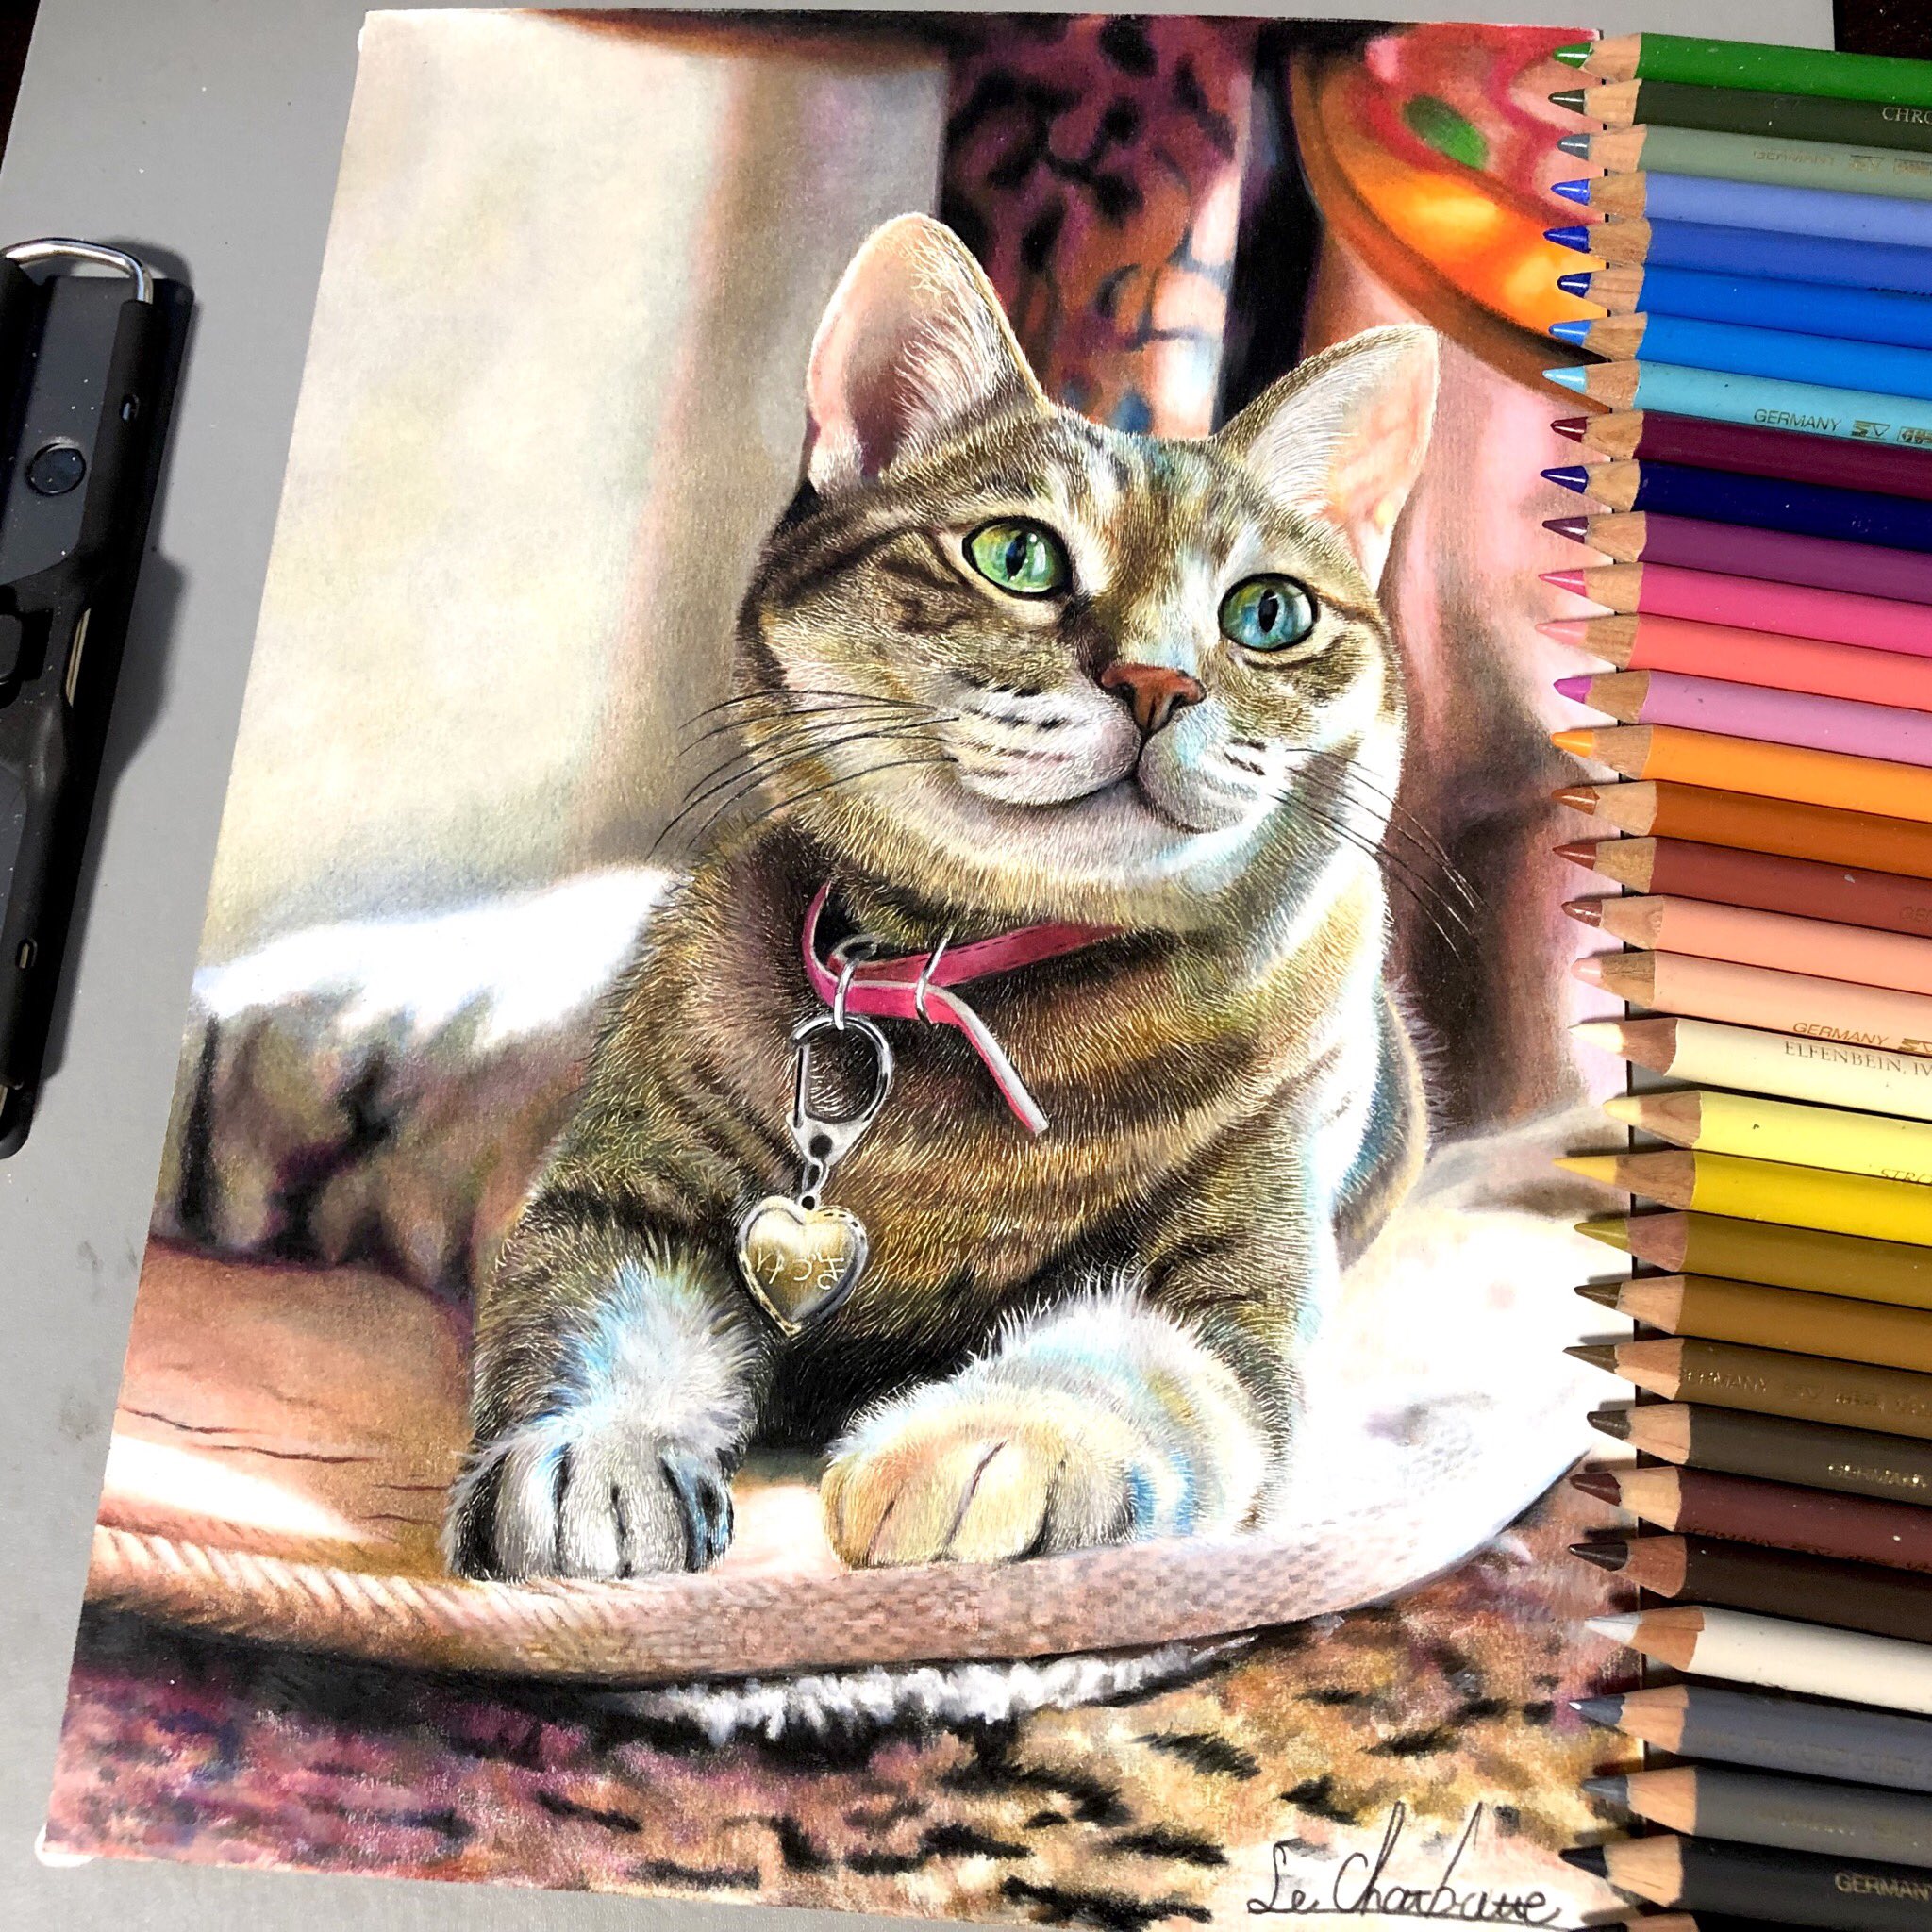 本物よりも本物っぽい 色鉛筆で50時間かけた描かれた猫のイラストが凄すぎる 話題の画像プラス